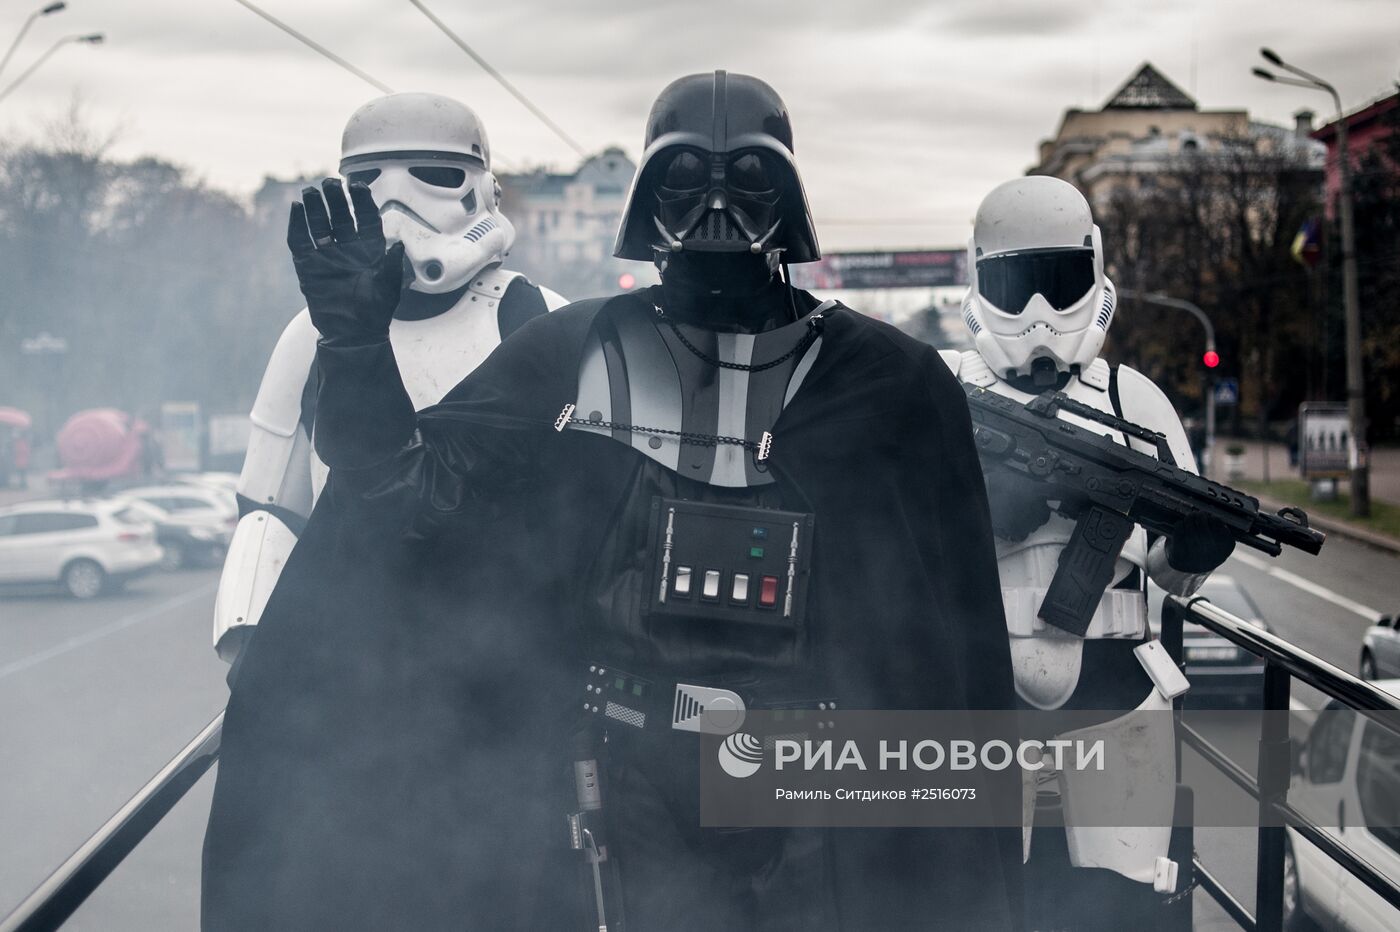 Агитационная кампания лидера "Интернет-партии" Украины Дарта Вейдера